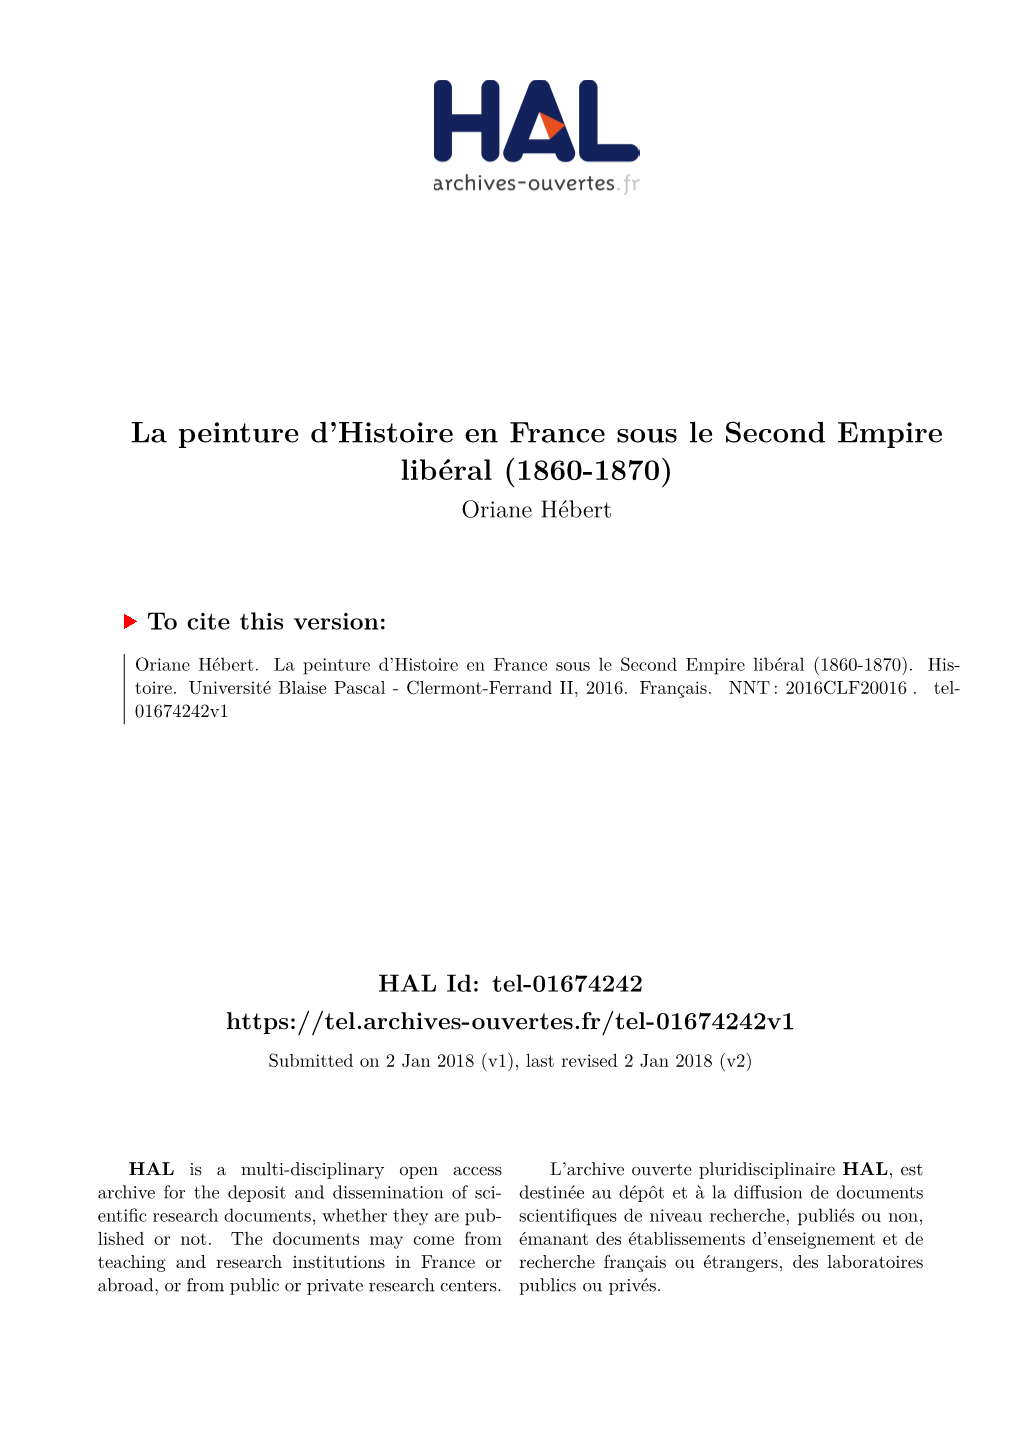 La Peinture D'histoire En France Sous Le Second Empire Libéral (1860-1870)